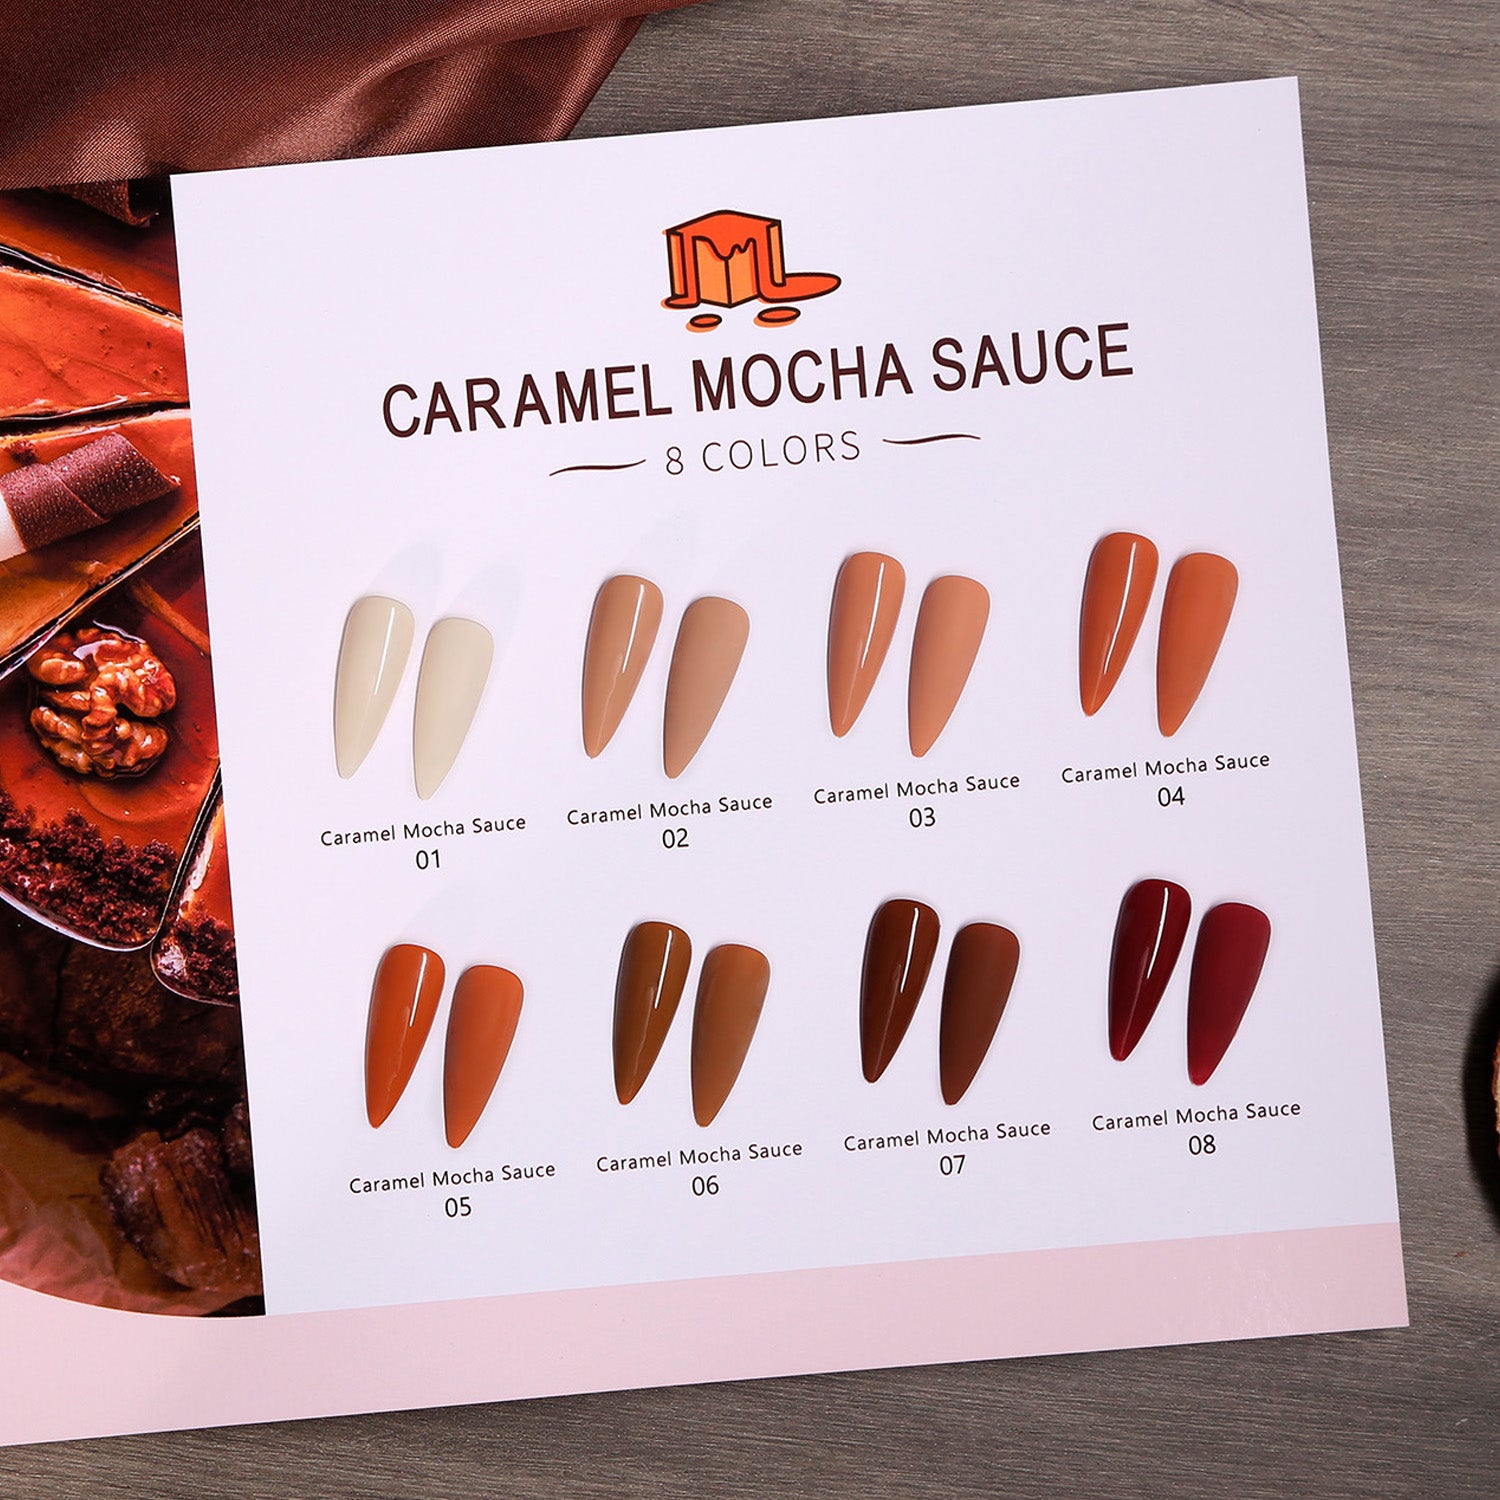 Caramel Mocha Sauce Series